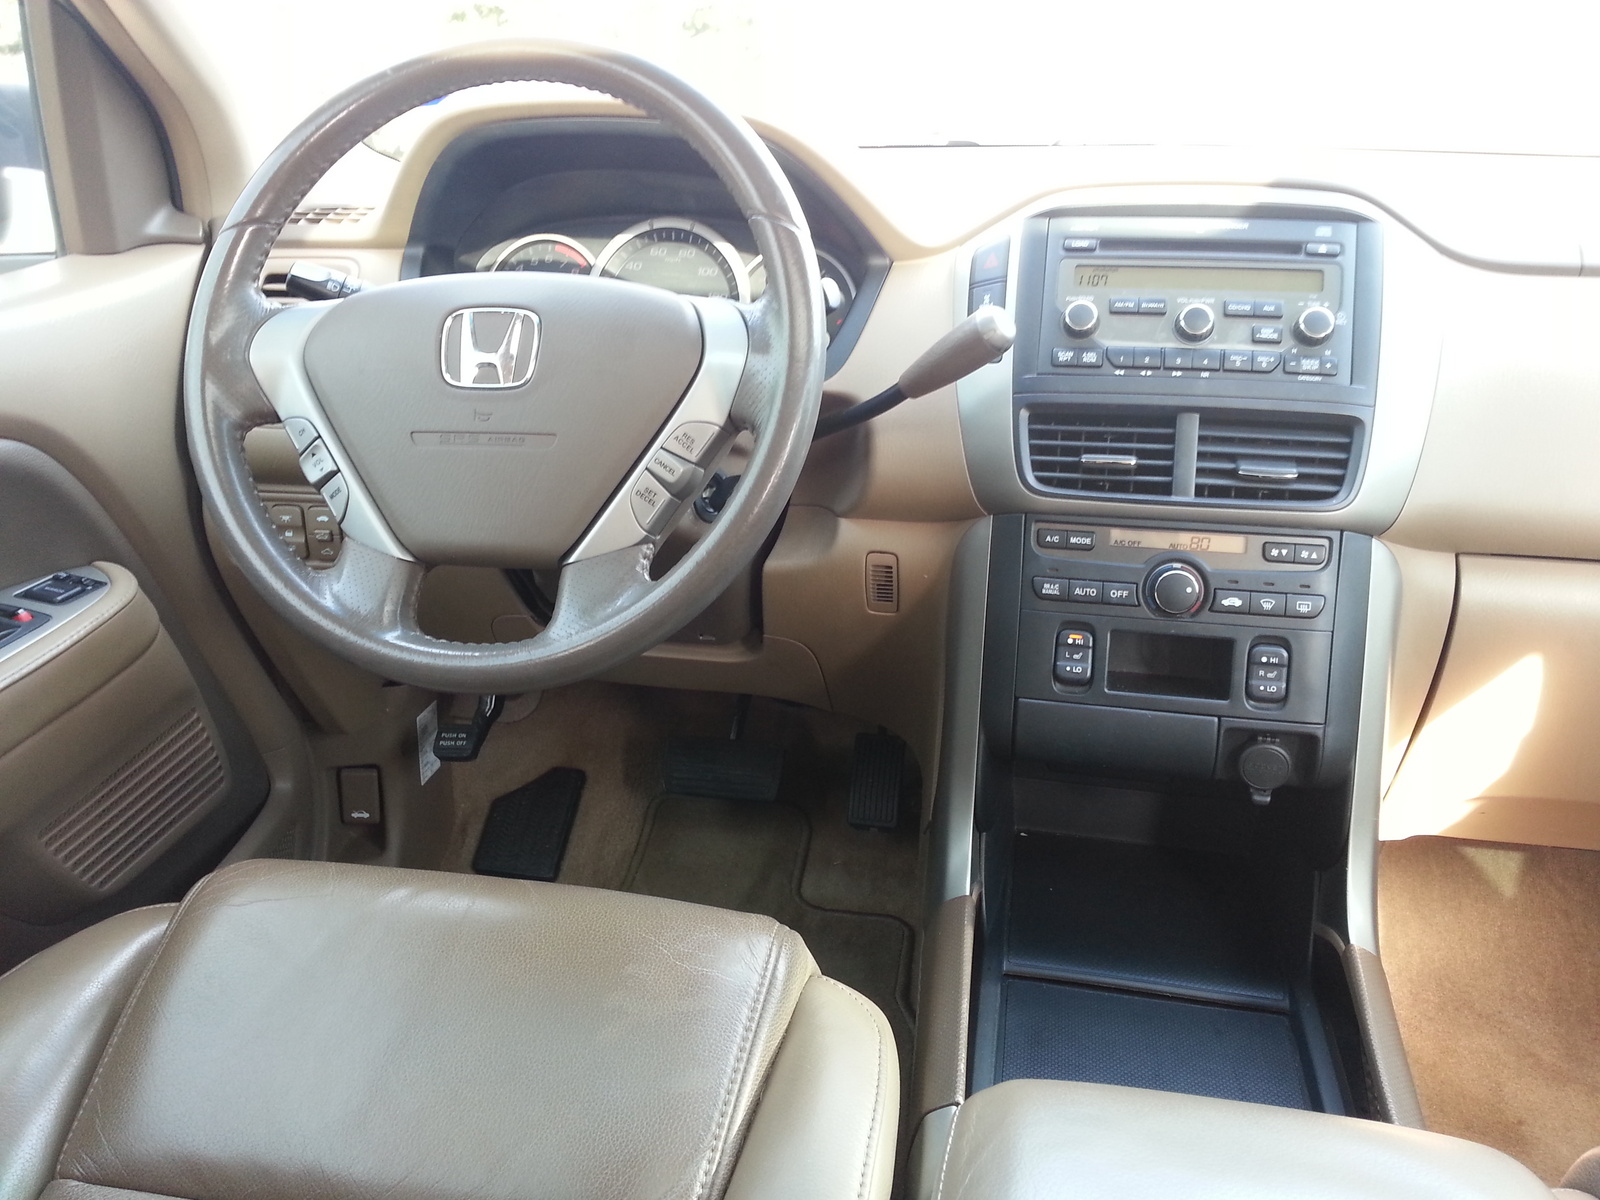 2006 Honda pilot exl interior #2